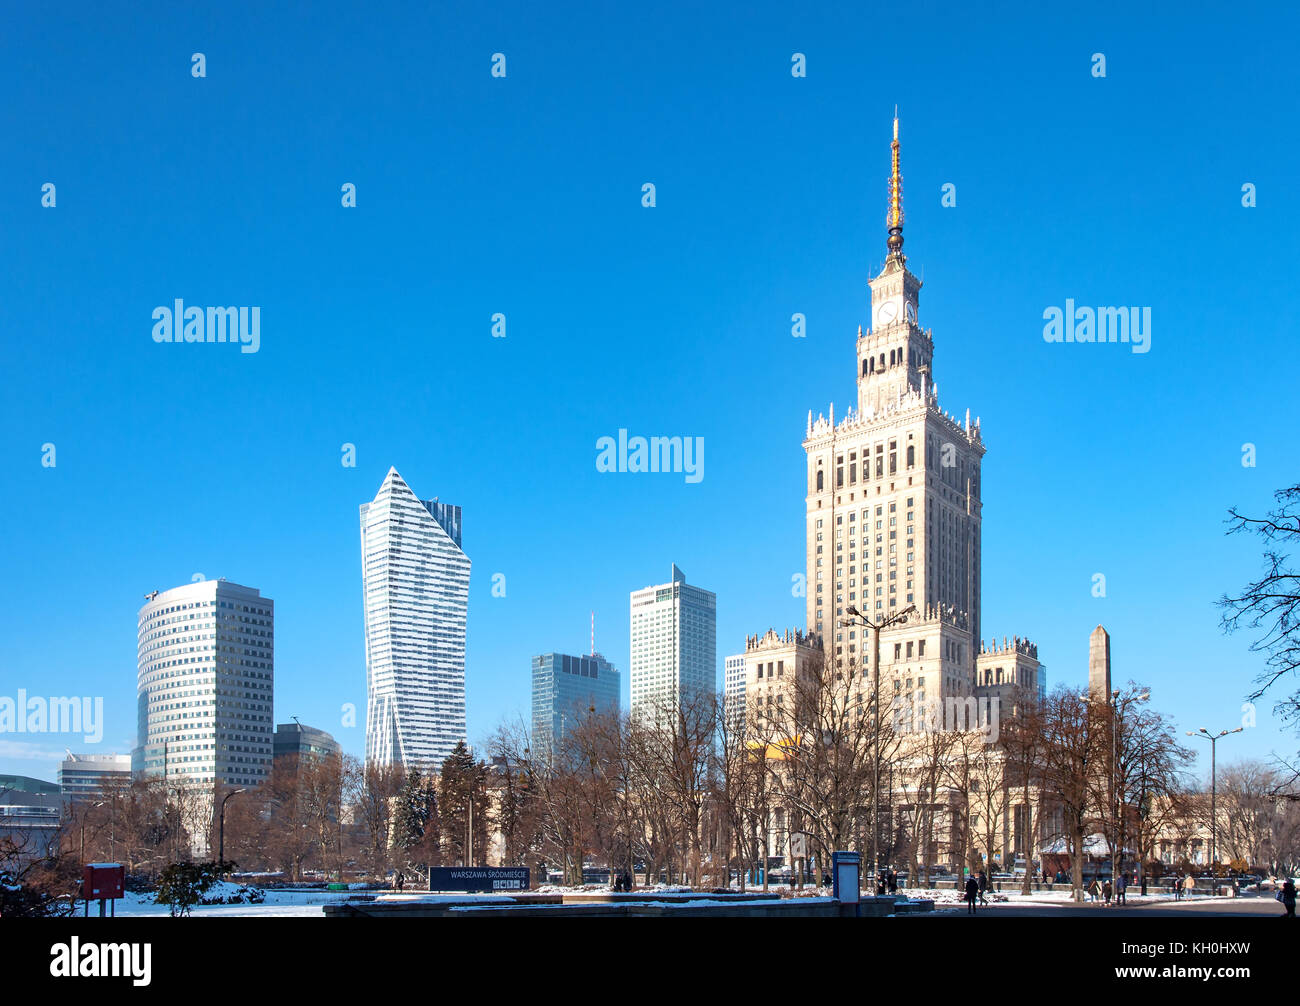 Centro di Varsavia con il palazzo della cultura e della scienza (pkin), un punto di riferimento e il simbolo dello stalinismo e del comunismo, e moderno grattacielo in inverno Foto Stock